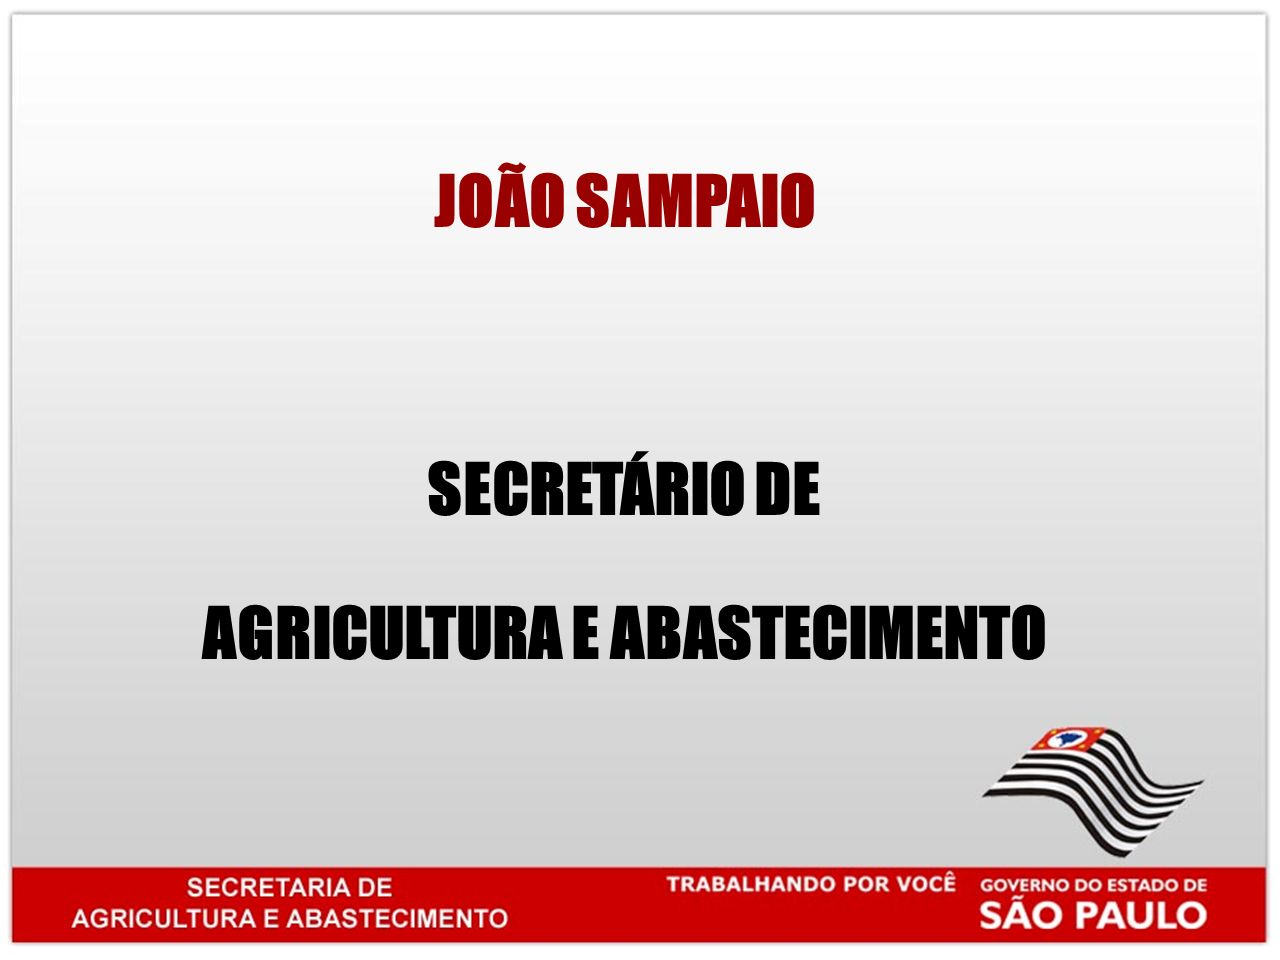 JOÃO SAMPAIO SECRETÁRIO DE AGRICULTURA E ABASTECIMENTO